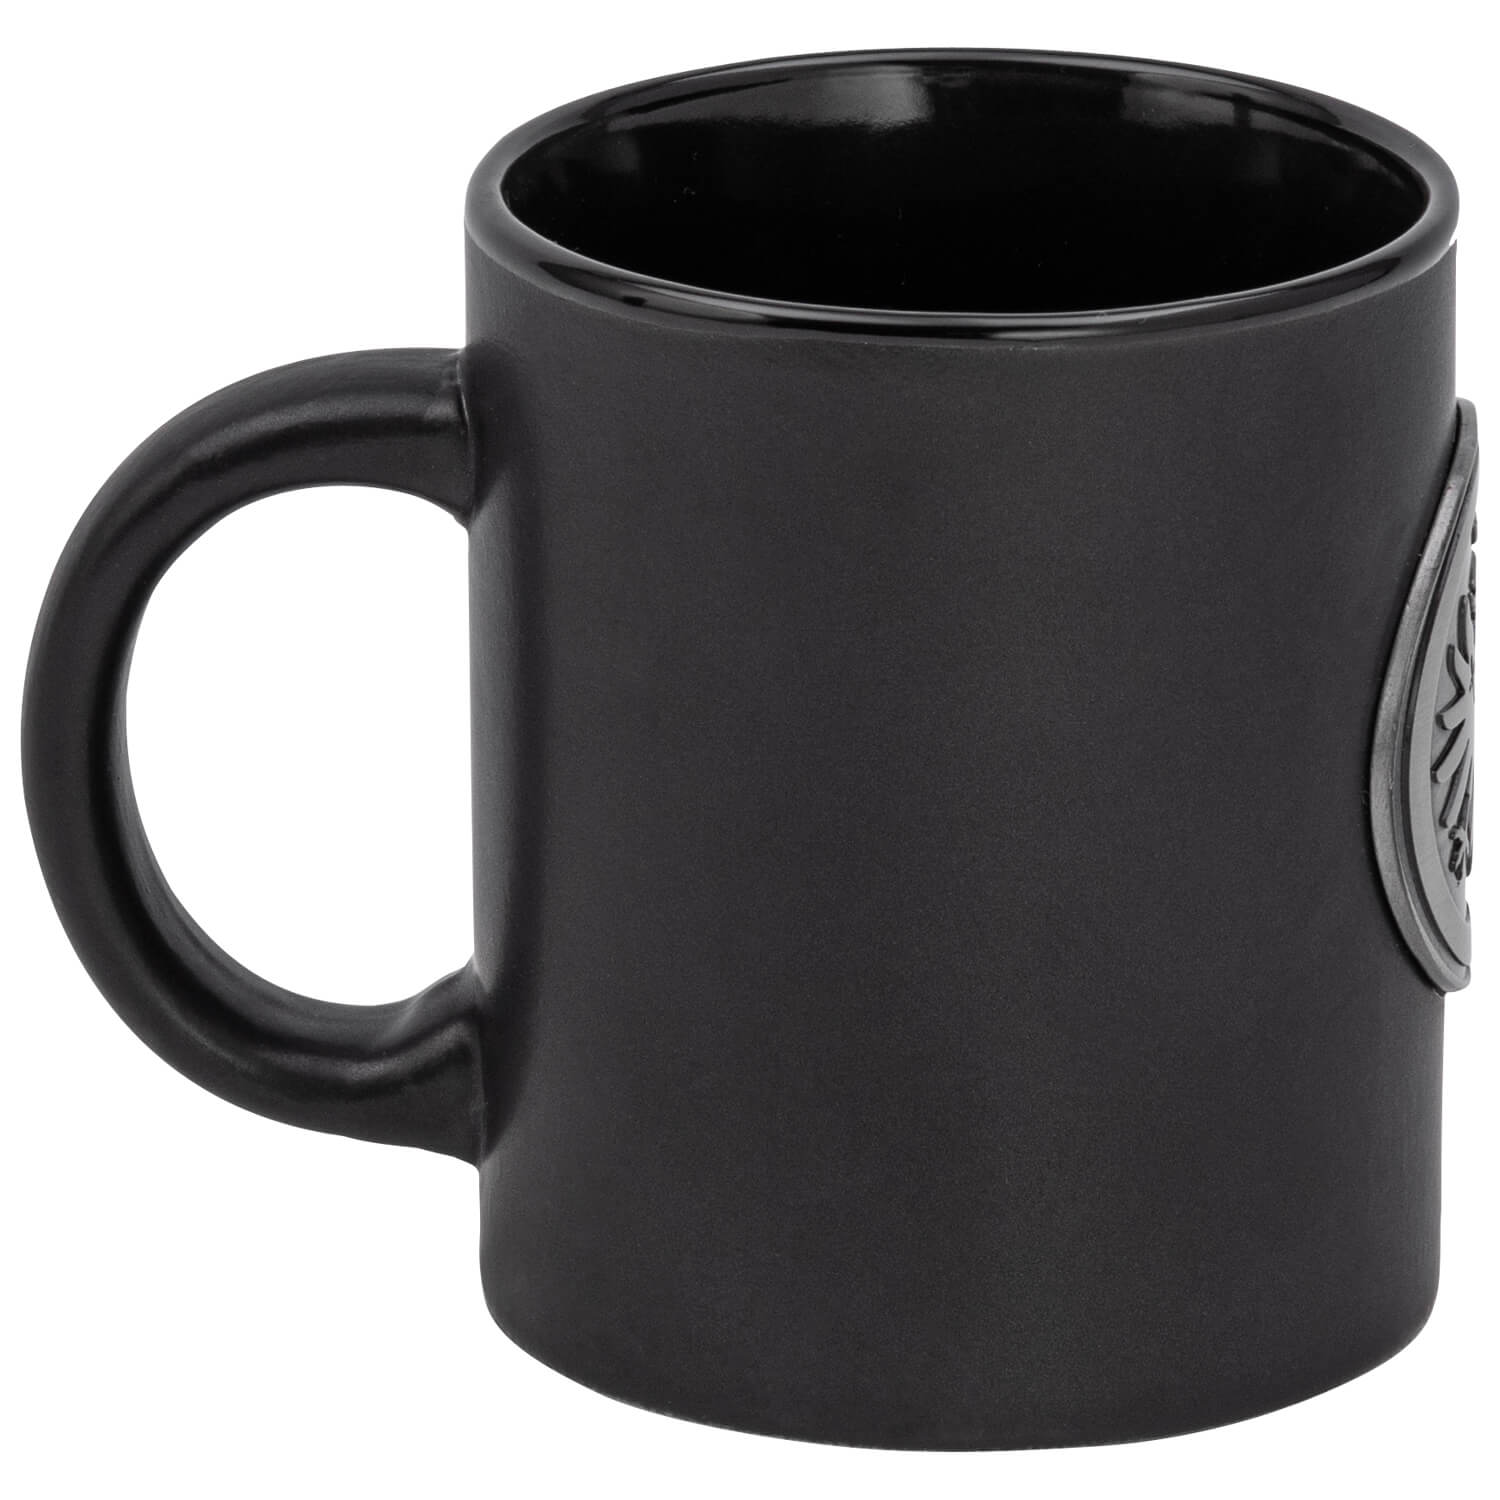 Bild 3: Tasse mit Metallemblem